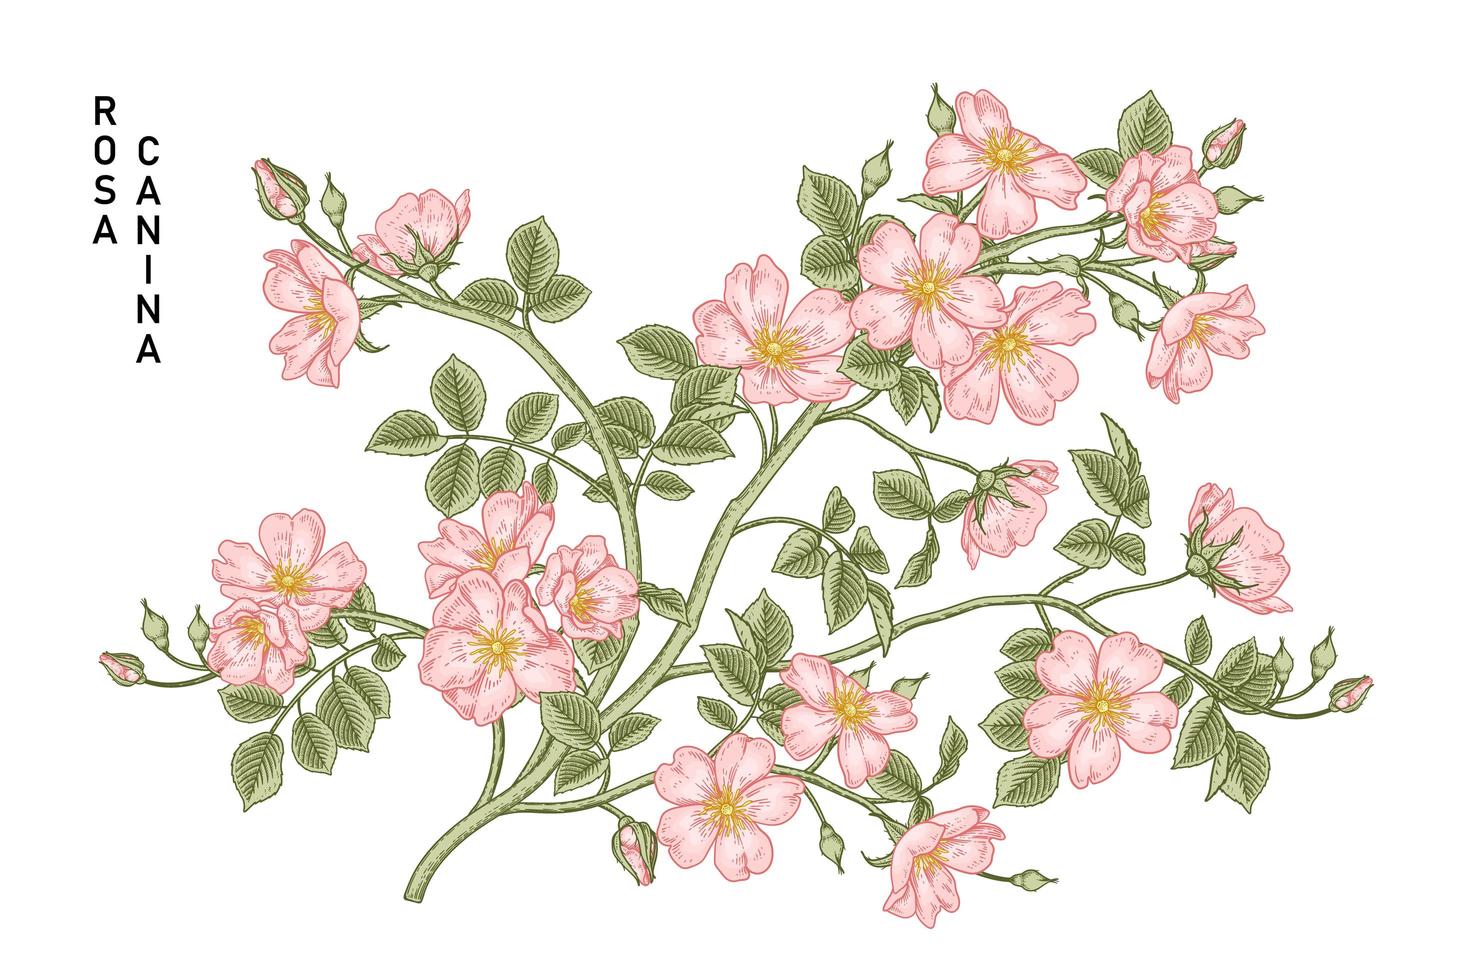 Zweig der rosa Hundrose oder der Rosa canina mit der Hand gezeichneten botanischen Illustrationen der Blume und der Blätter vektor